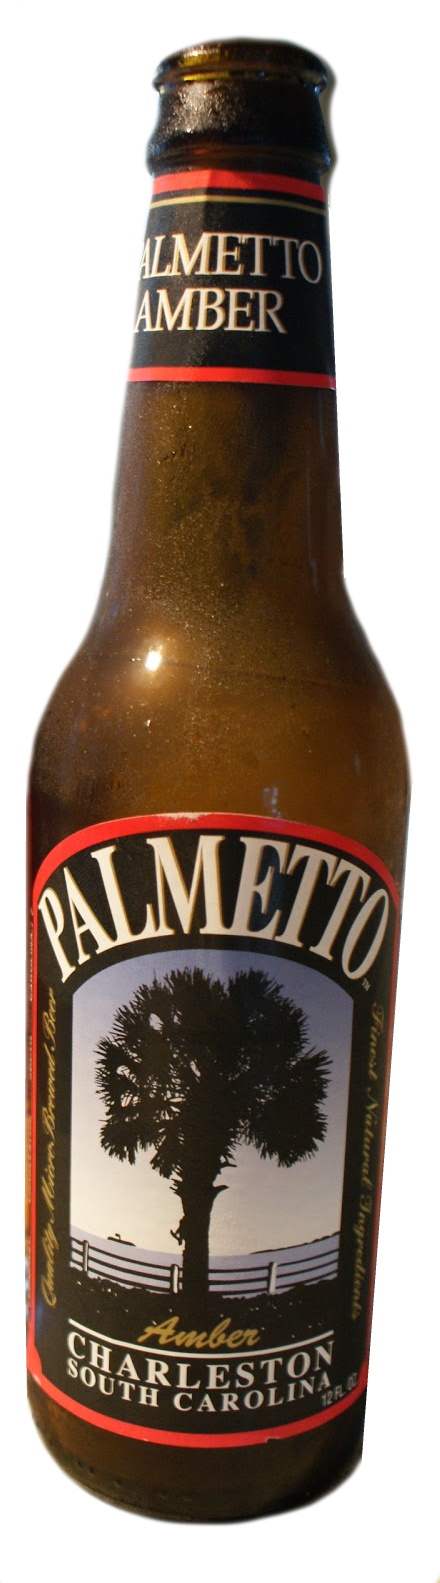 Produktbild von Palmetto Amber Ale